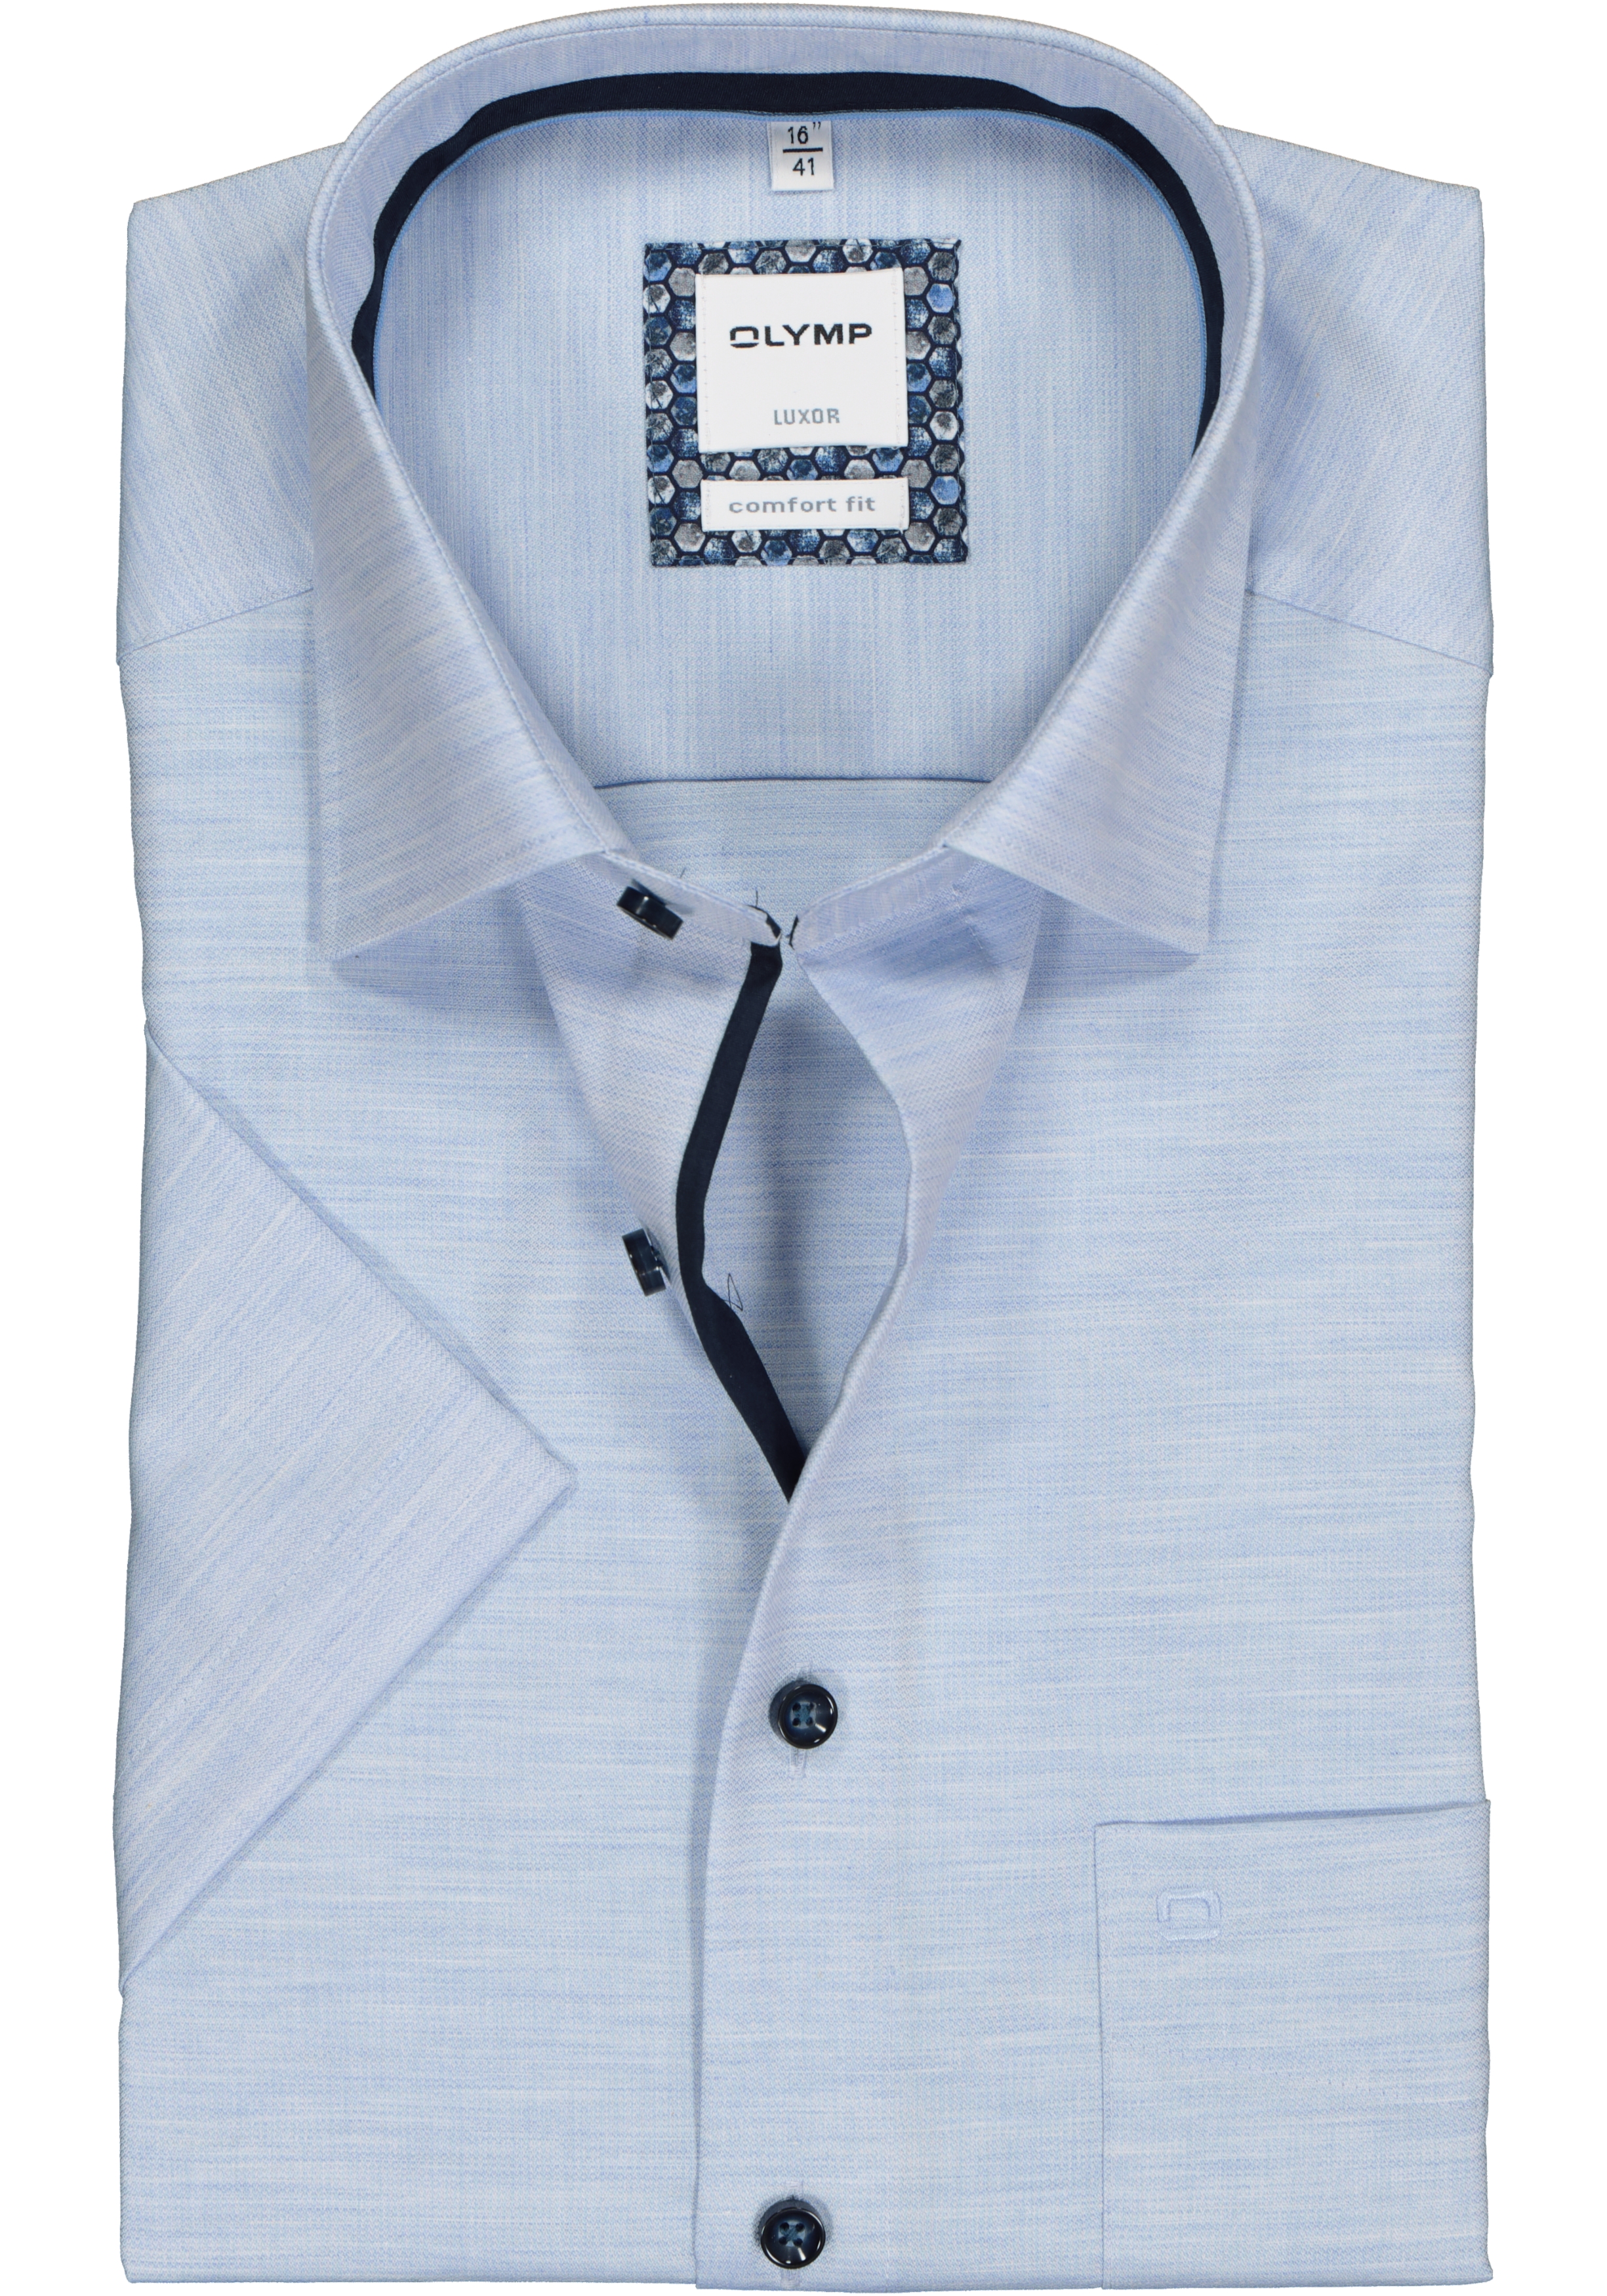 OLYMP Luxor comfort fit overhemd, korte mouw, lichtblauw structuur (contrast)